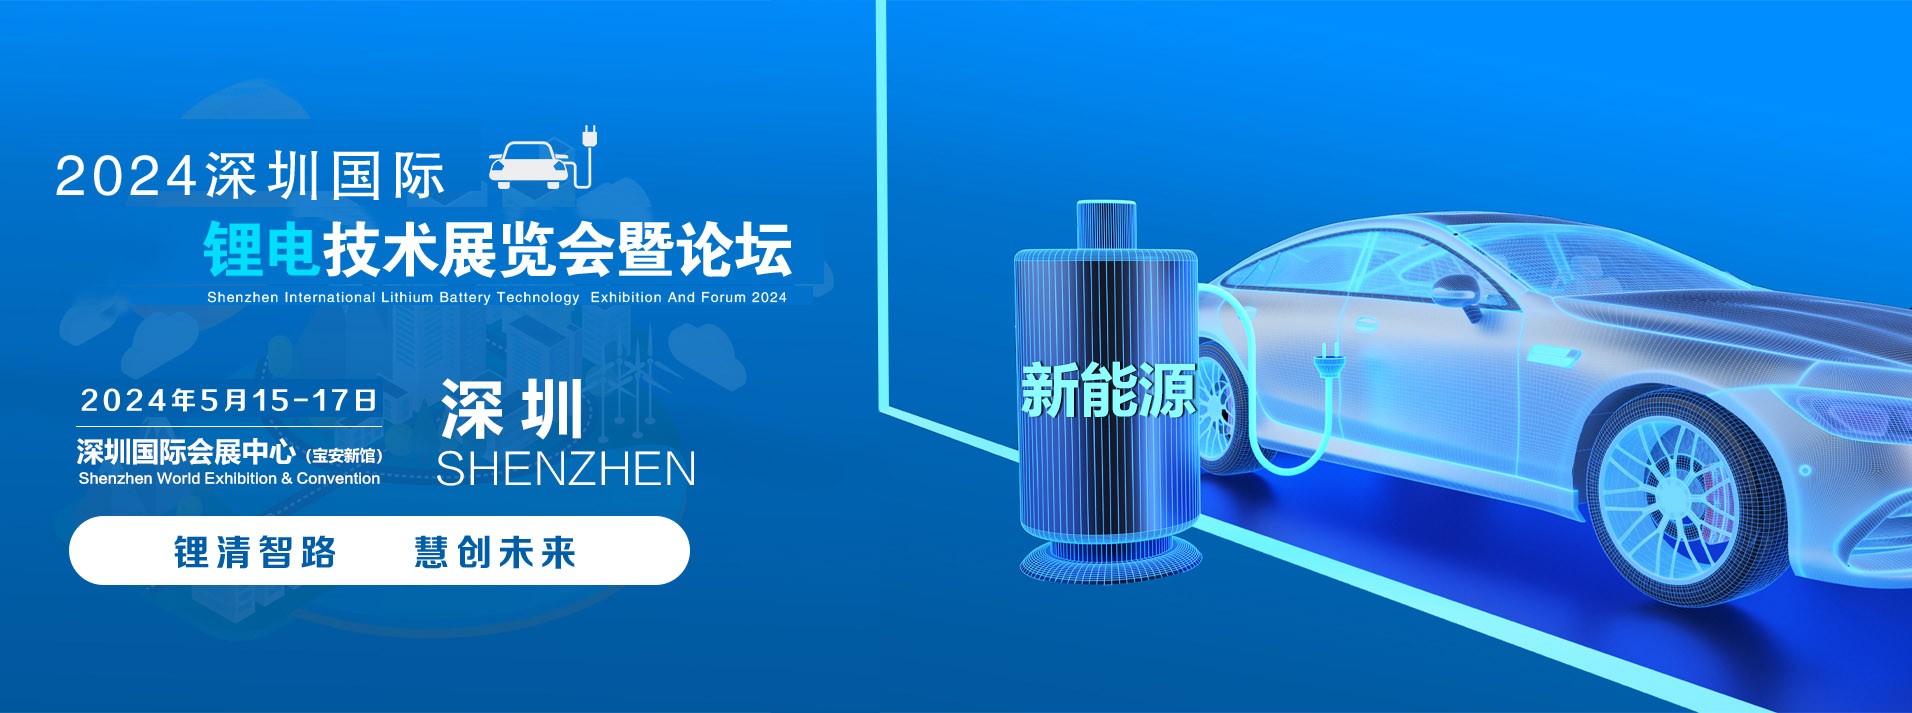 东莞览越新能源2024深圳国际锂电池技术展览会暨论坛